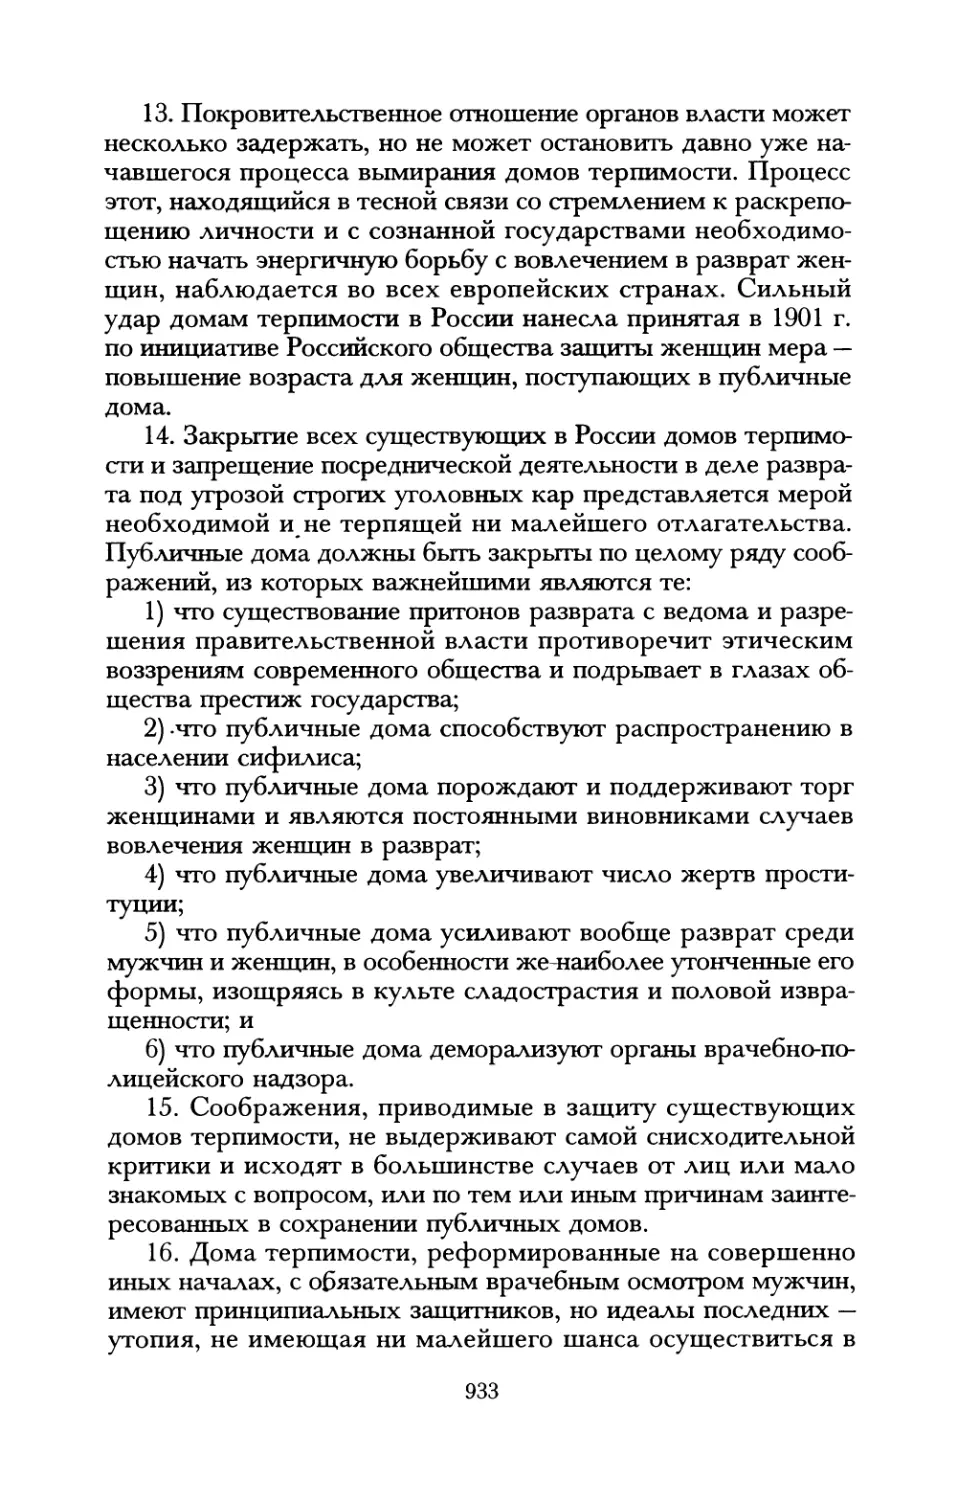 А.И. Елистратов. Проституция в России до революции 1917 года. Фрагмент